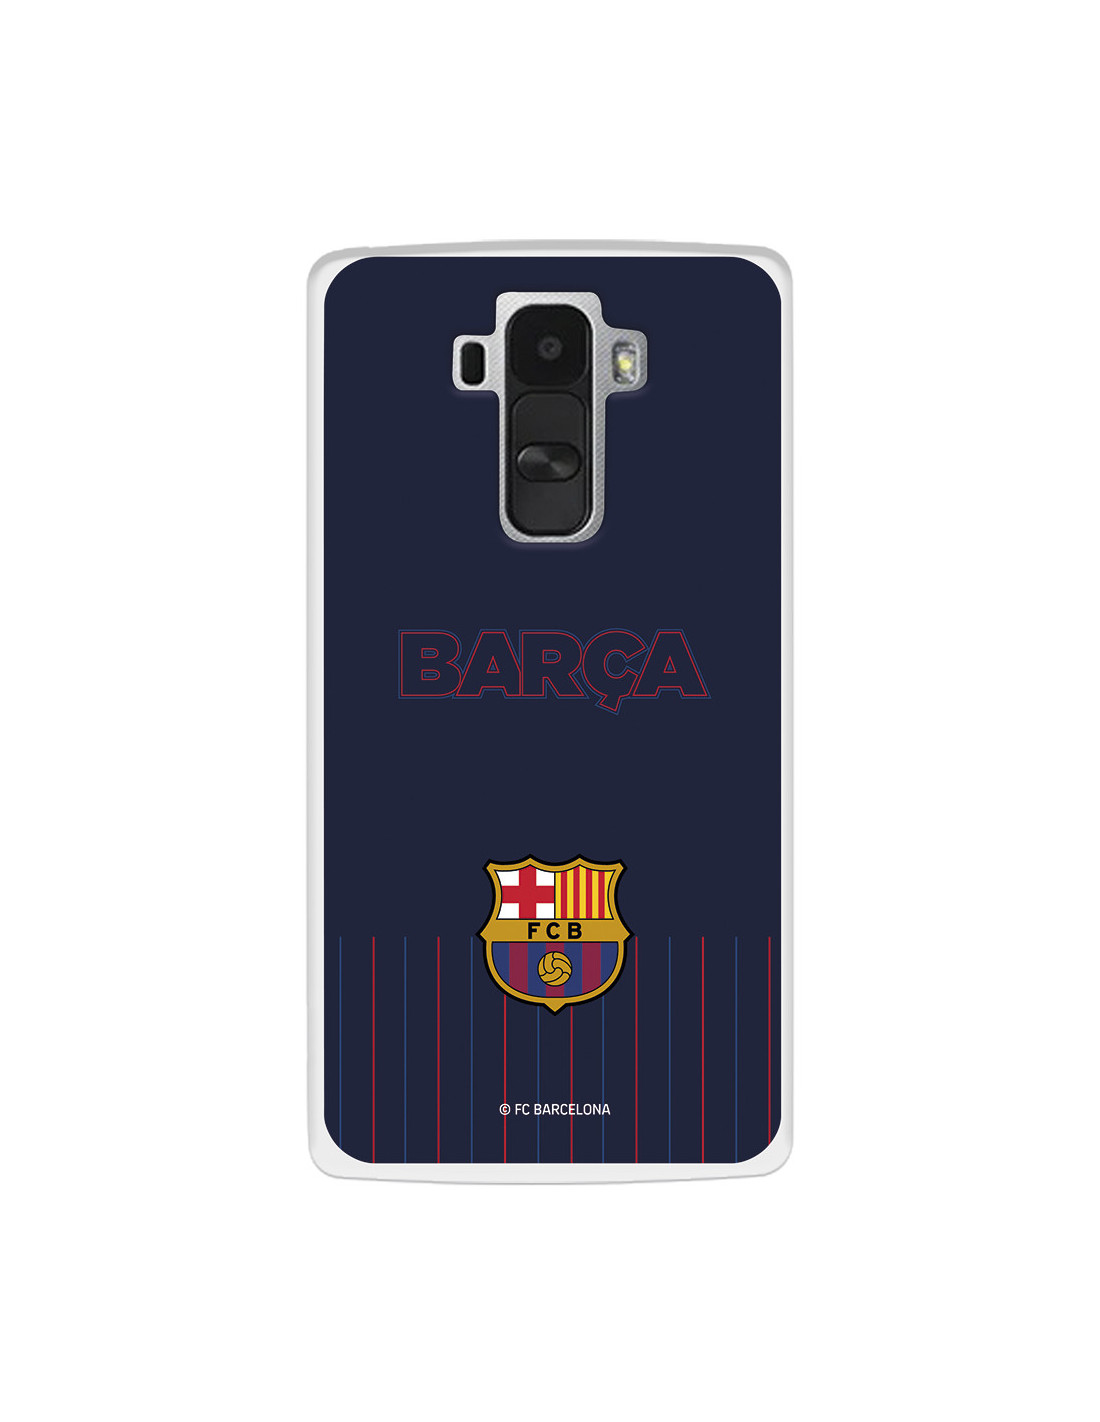 átomo Mártir Nos vemos mañana Funda para LG G4 del FC Barcelona Barsa Fondo Azul - Licencia Oficial FC  Barcelona